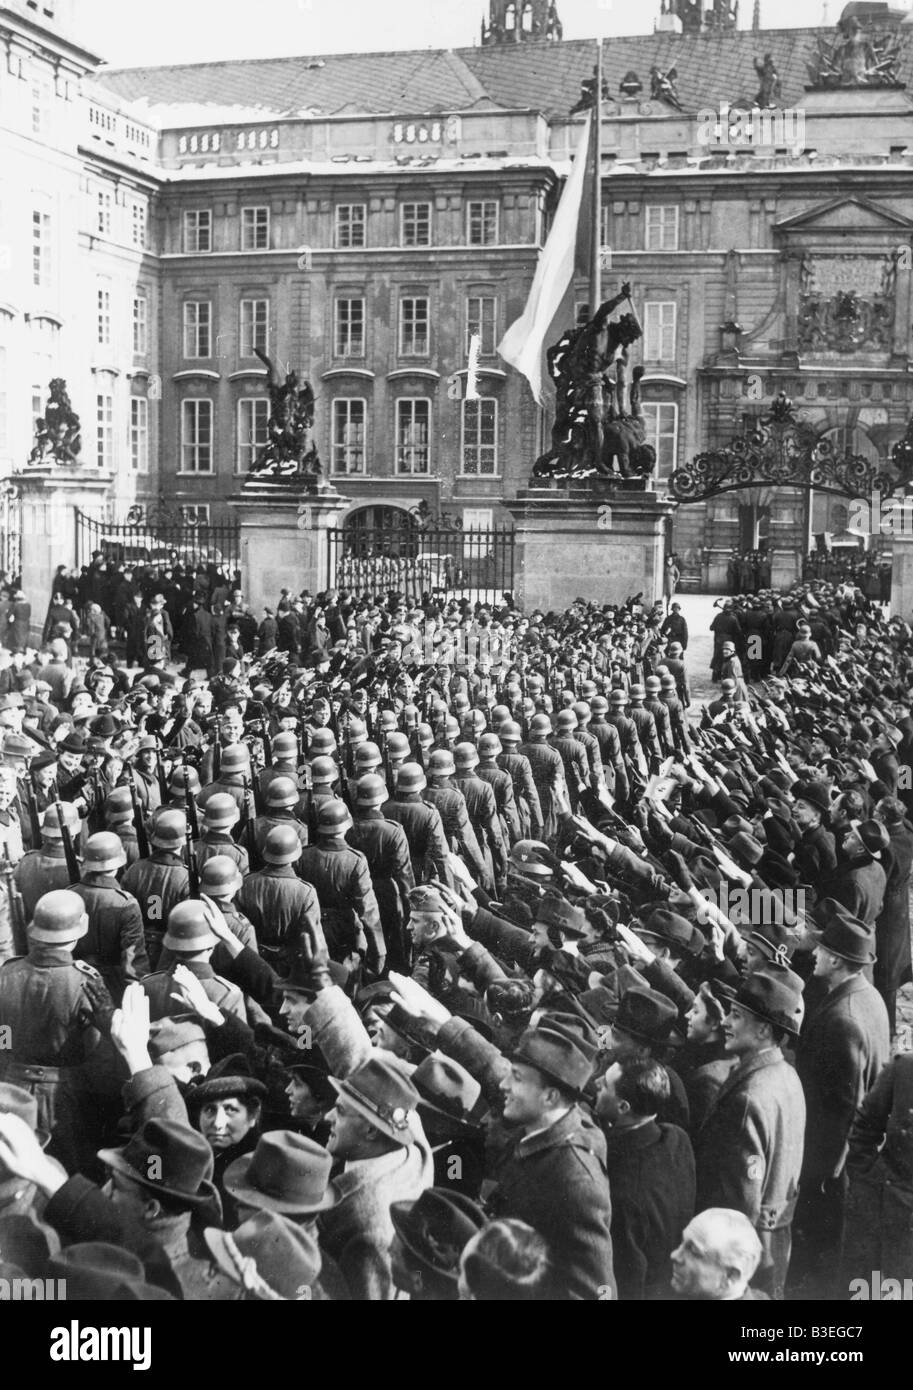 German Troops Prague Banque d'image et photos - Alamy